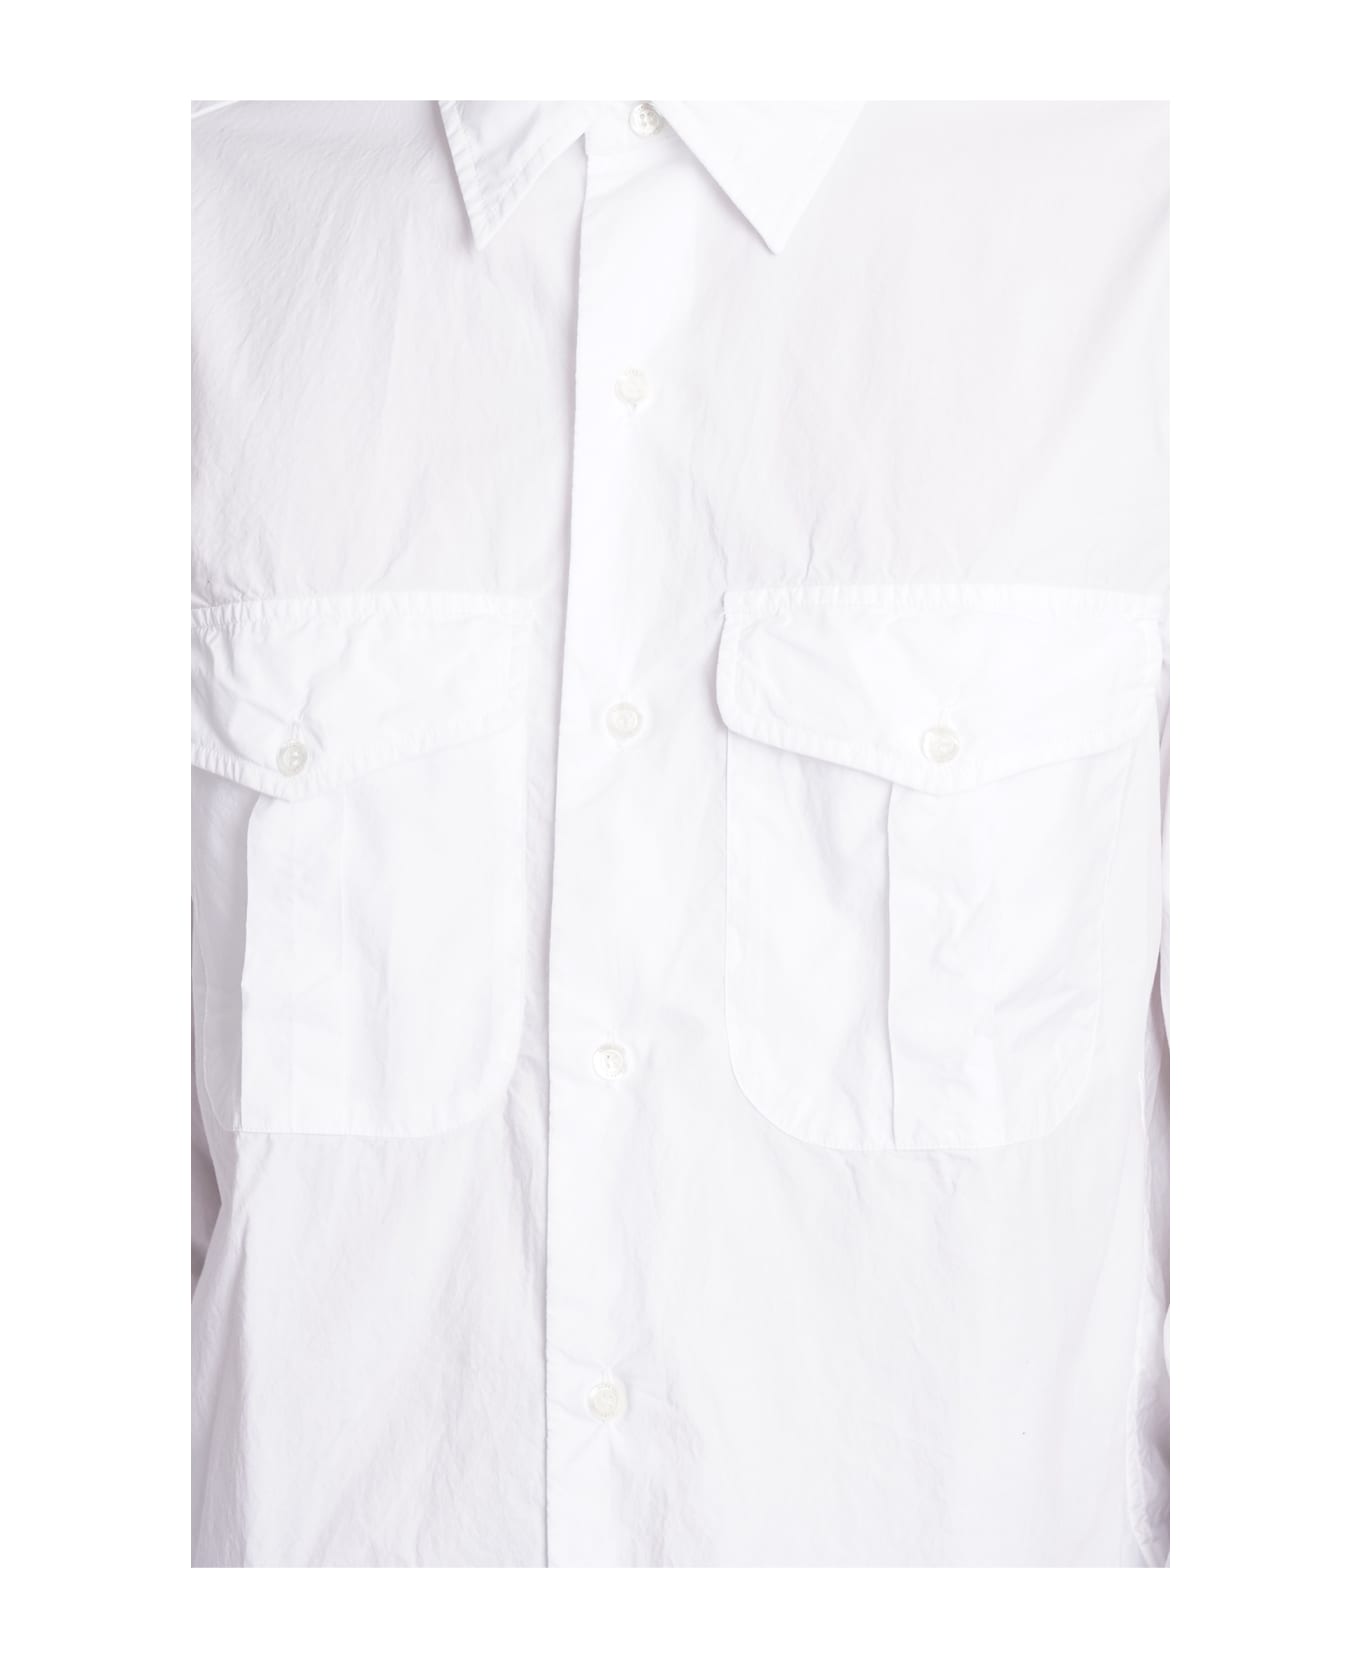 Aspesi Camicia Glenn Shirt In White Cotton - white シャツ